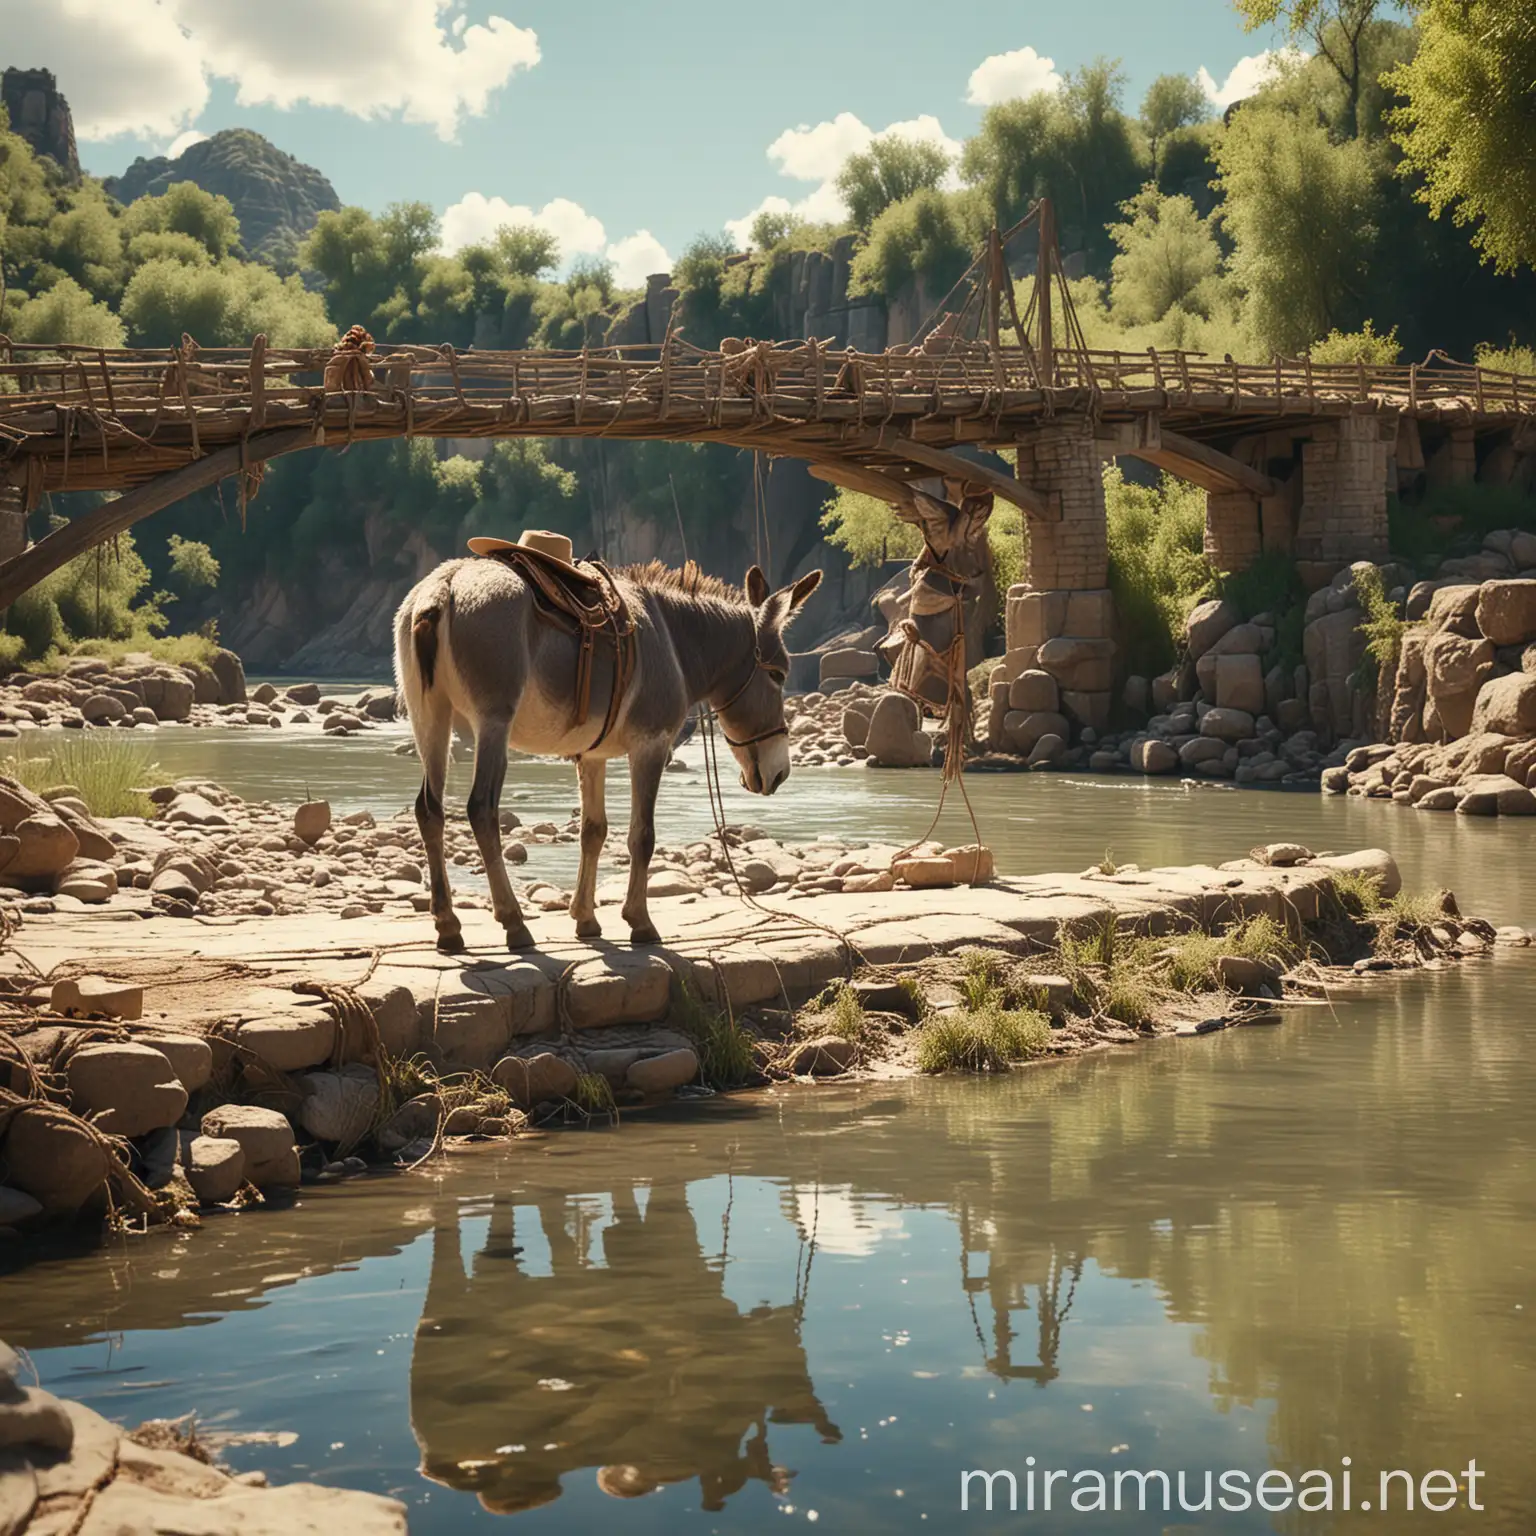 burro bebiendo en el rio al lado de un puente, Amarrado con una cuerda por el dueño. Hombre mayor con sombrero, día de sol, modo pixar